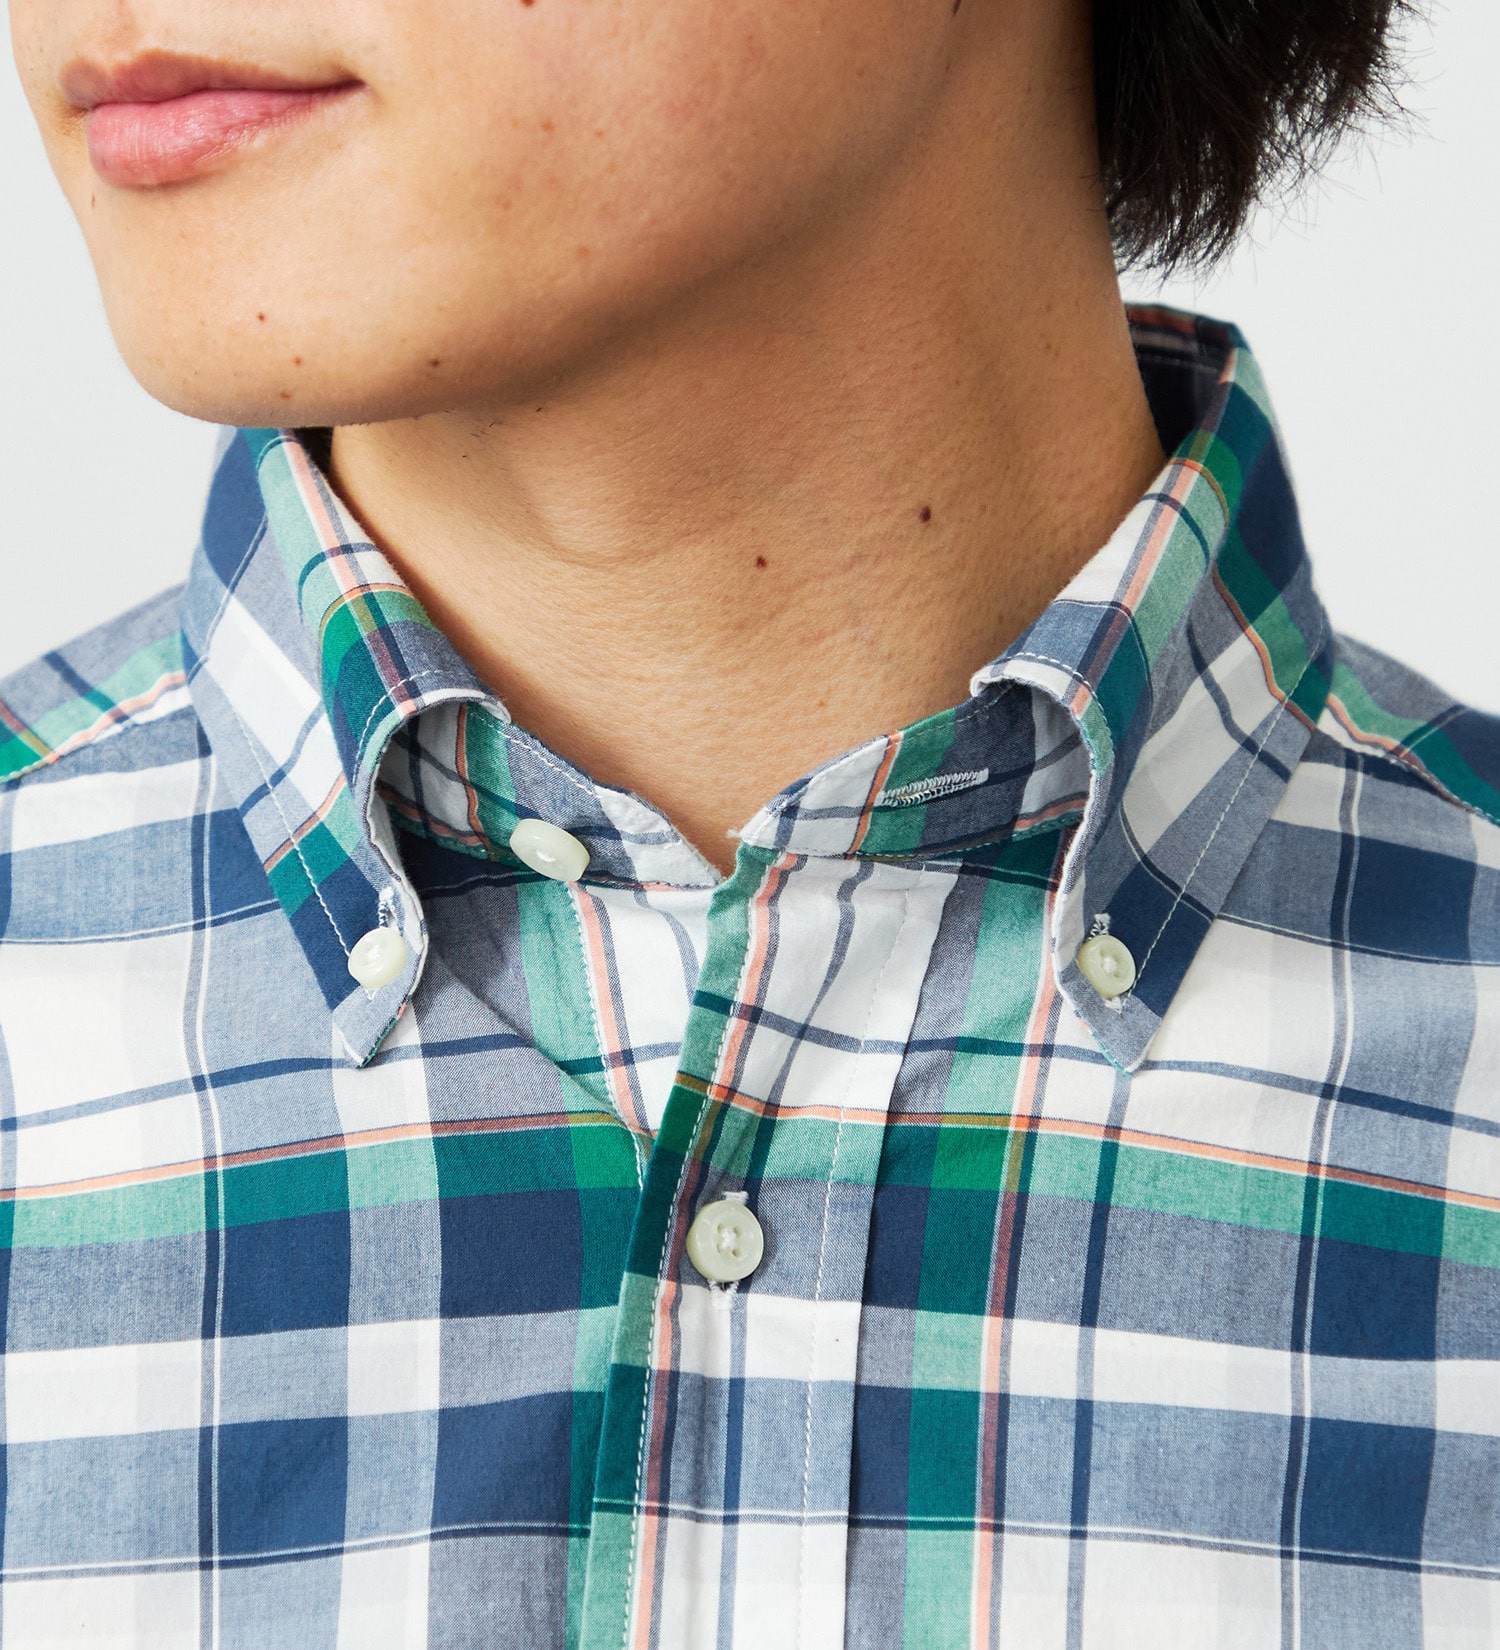 EDWIN(エドウイン)の半袖 ボタンダウンシャツ|トップス/シャツ/ブラウス/メンズ|グリーン